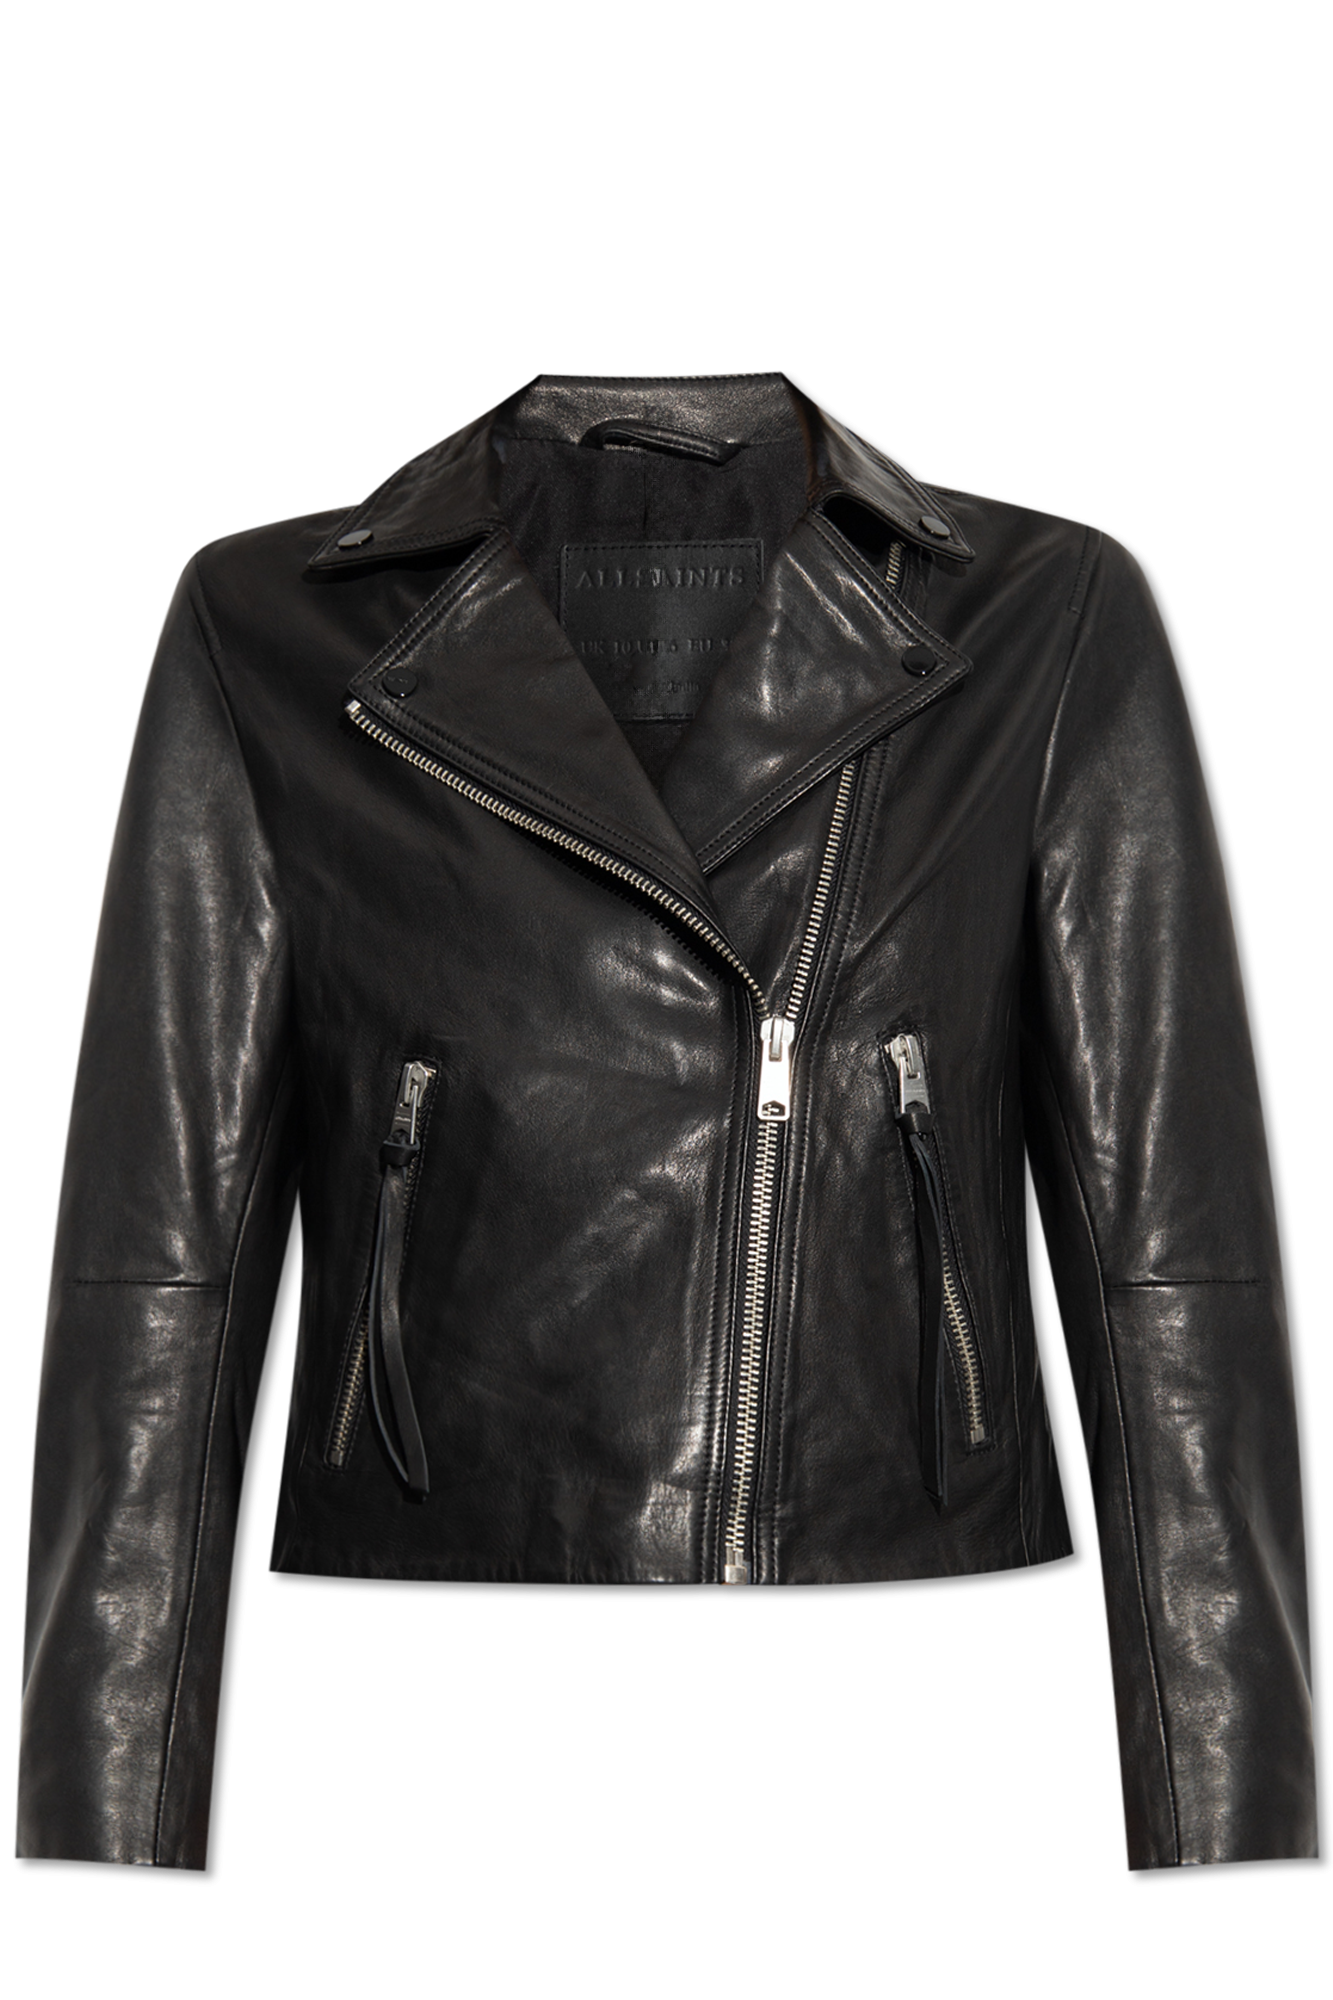 Louis Vuitton Black Leather Lambskin Moto Biker Jacket Size 34 2 US Women